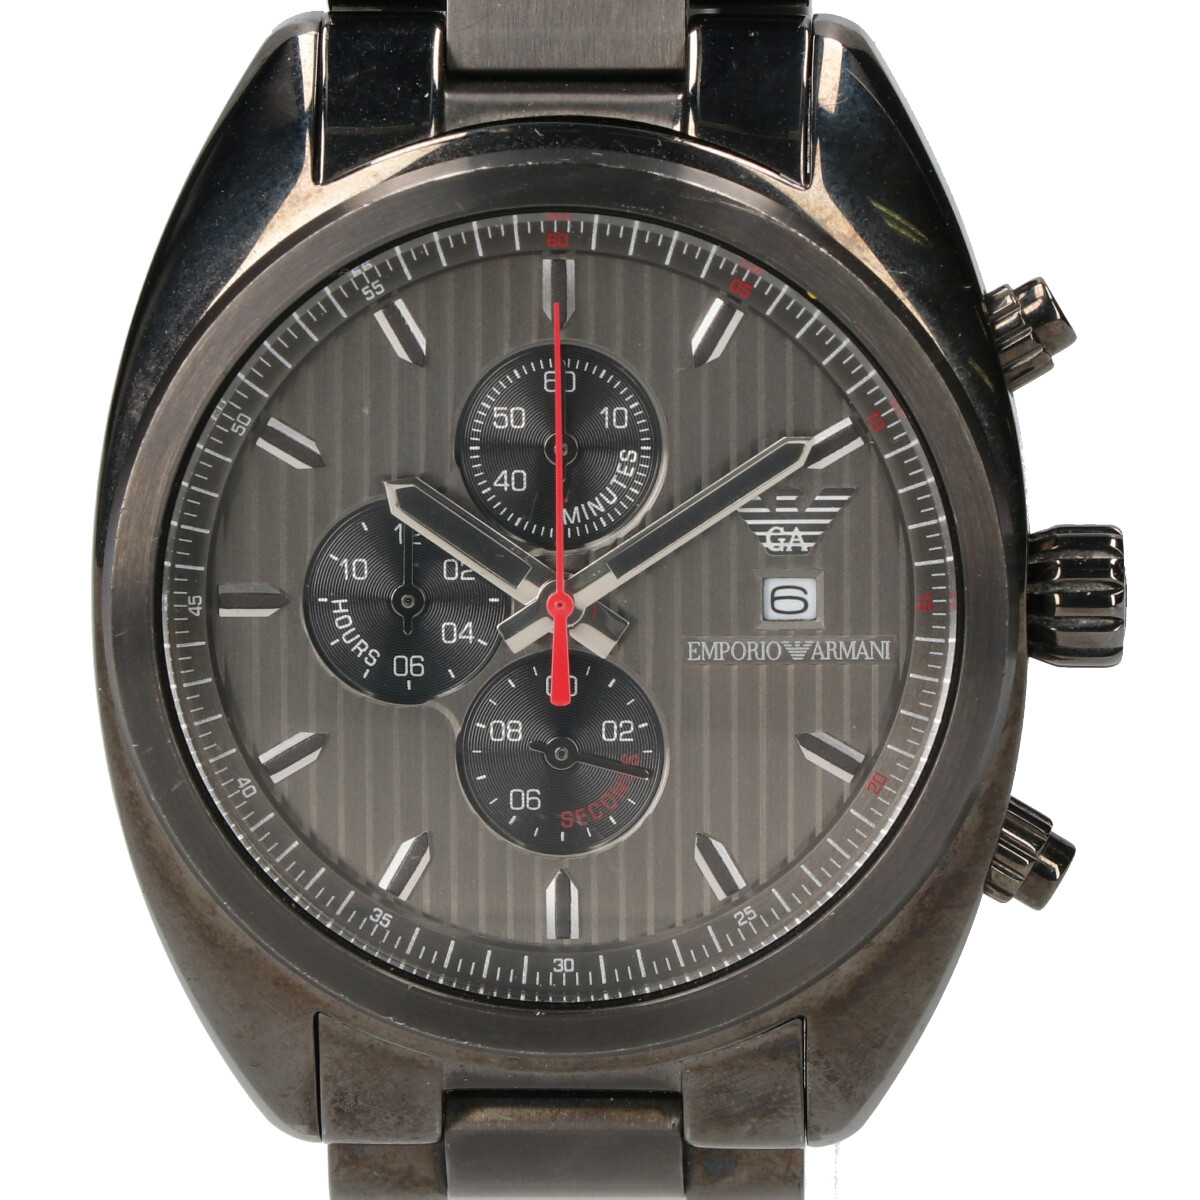 アルマーニのAR-5913 クロノグラフ クォーツ時計の買取実績です。